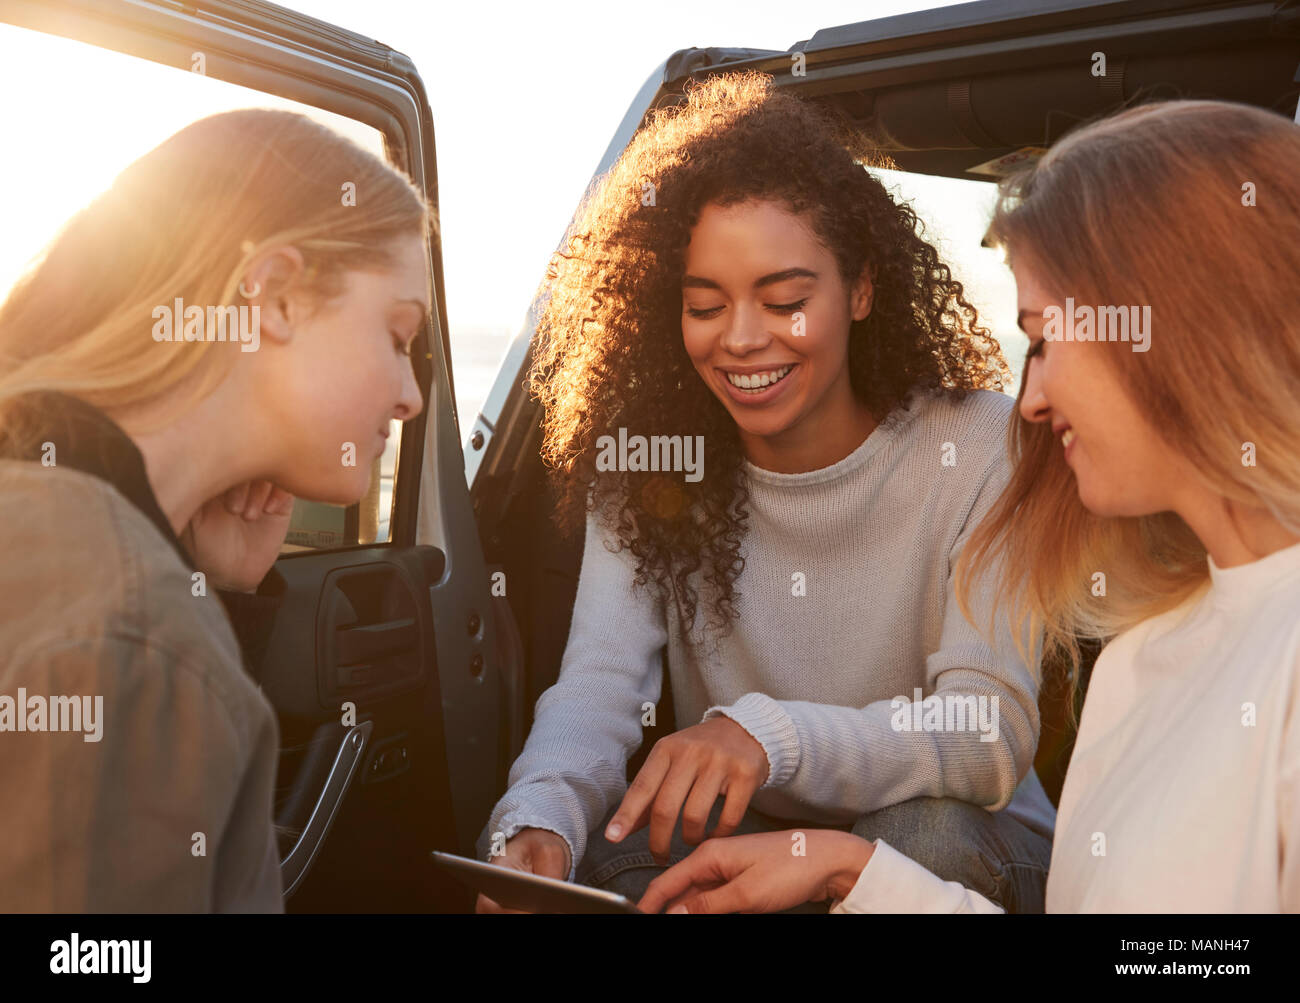 La planification d'amis femelle road trip itinéraire avec tablet computer Banque D'Images